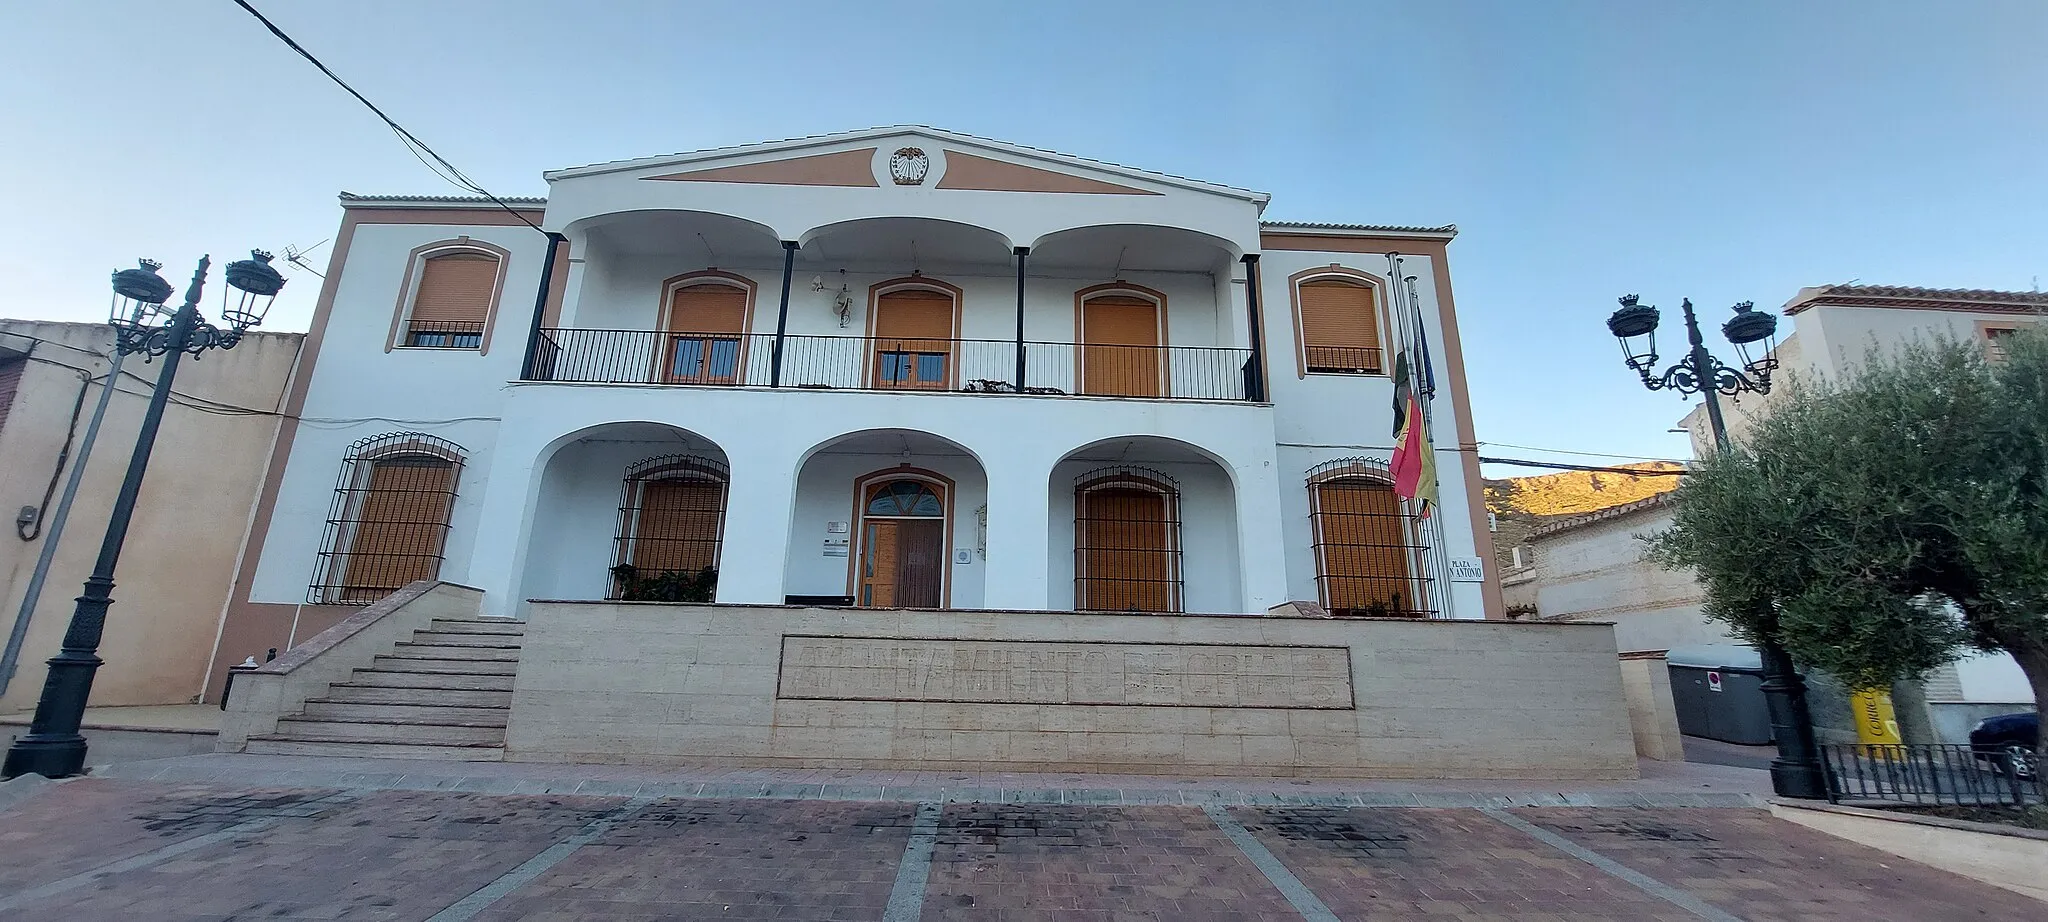 Photo showing: casa consistorial situada en el municipio de Oria,Almería